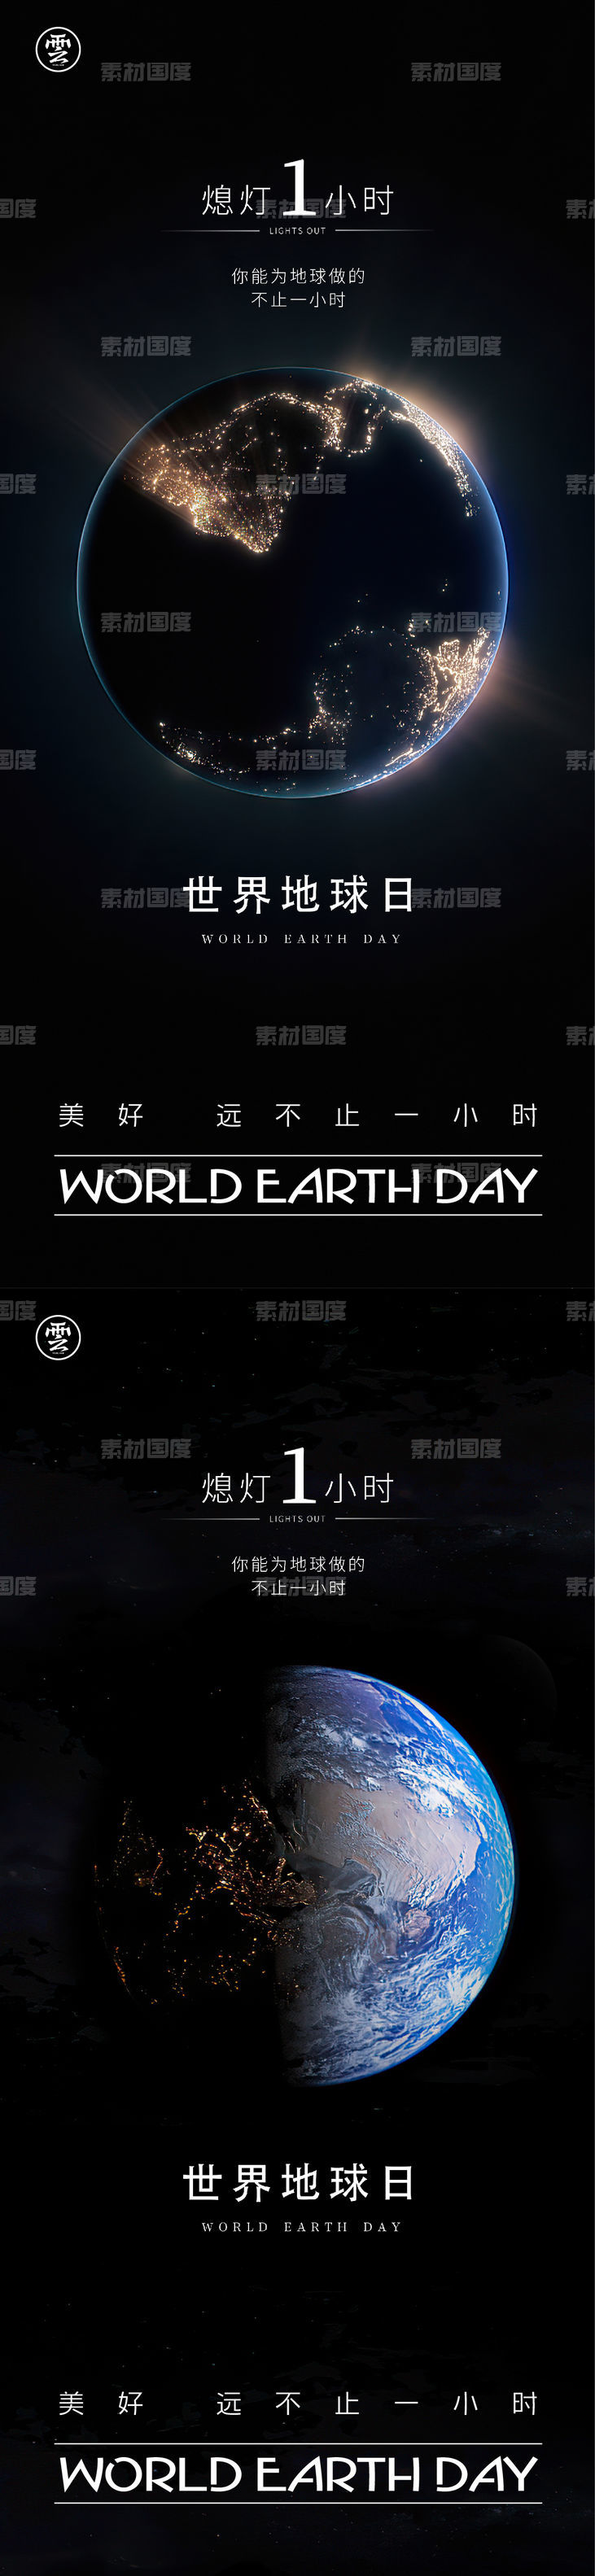 地球一小时 世界地球日 地球 城市 光 停电